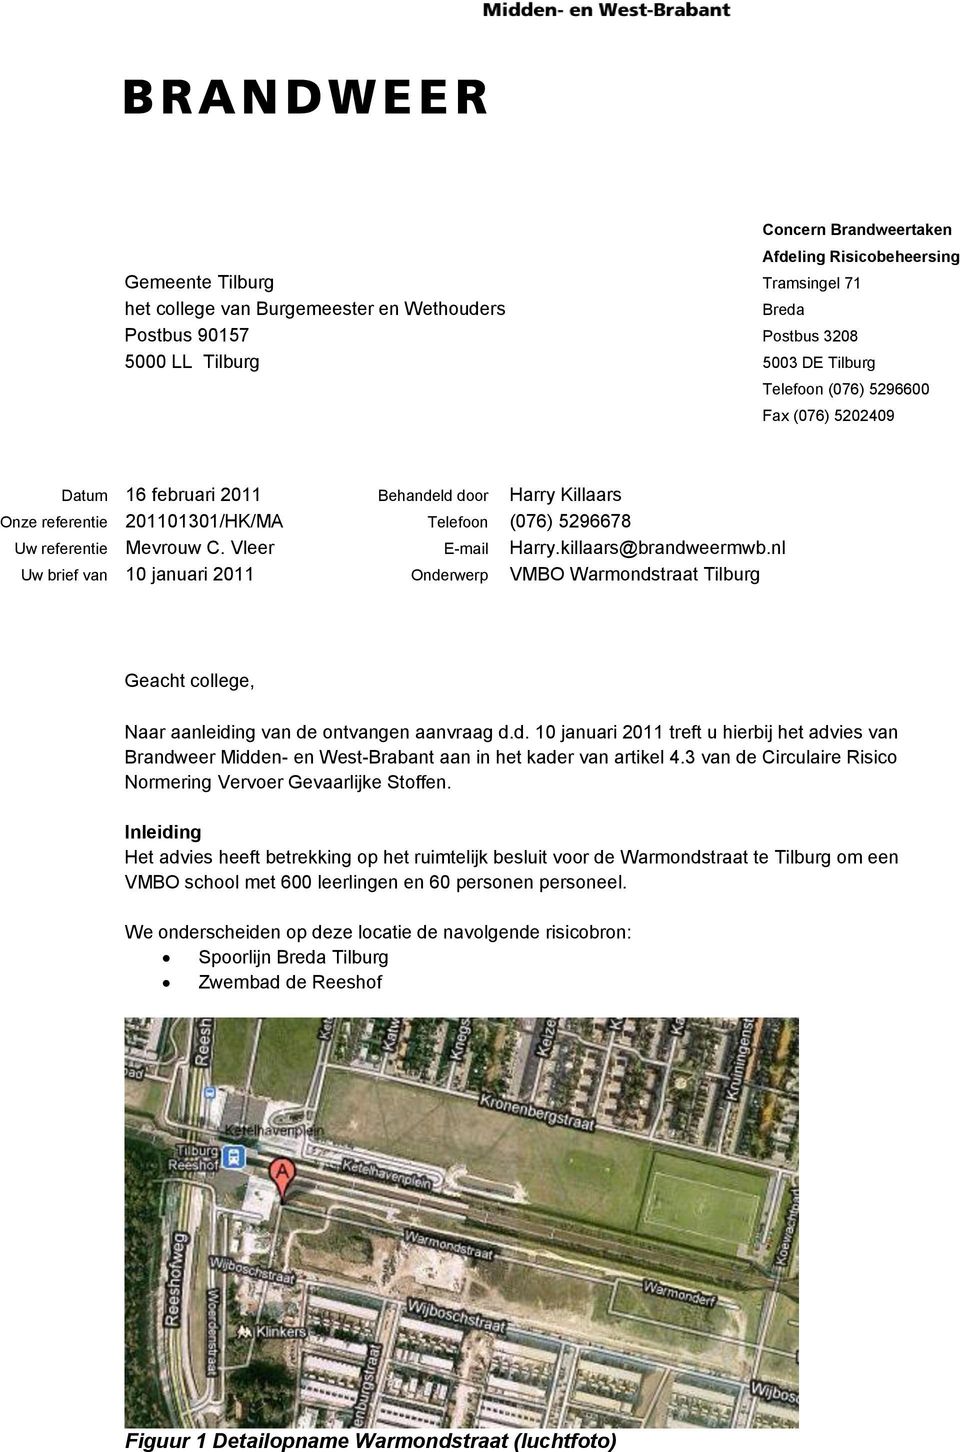 killaars@brandweermwb.nl Uw brief van 10 januari 2011 Onderwerp VMBO Warmondstraat Tilburg Geacht college, Naar aanleiding van de ontvangen aanvraag d.d. 10 januari 2011 treft u hierbij het advies van Brandweer Midden- en West-Brabant aan in het kader van artikel 4.